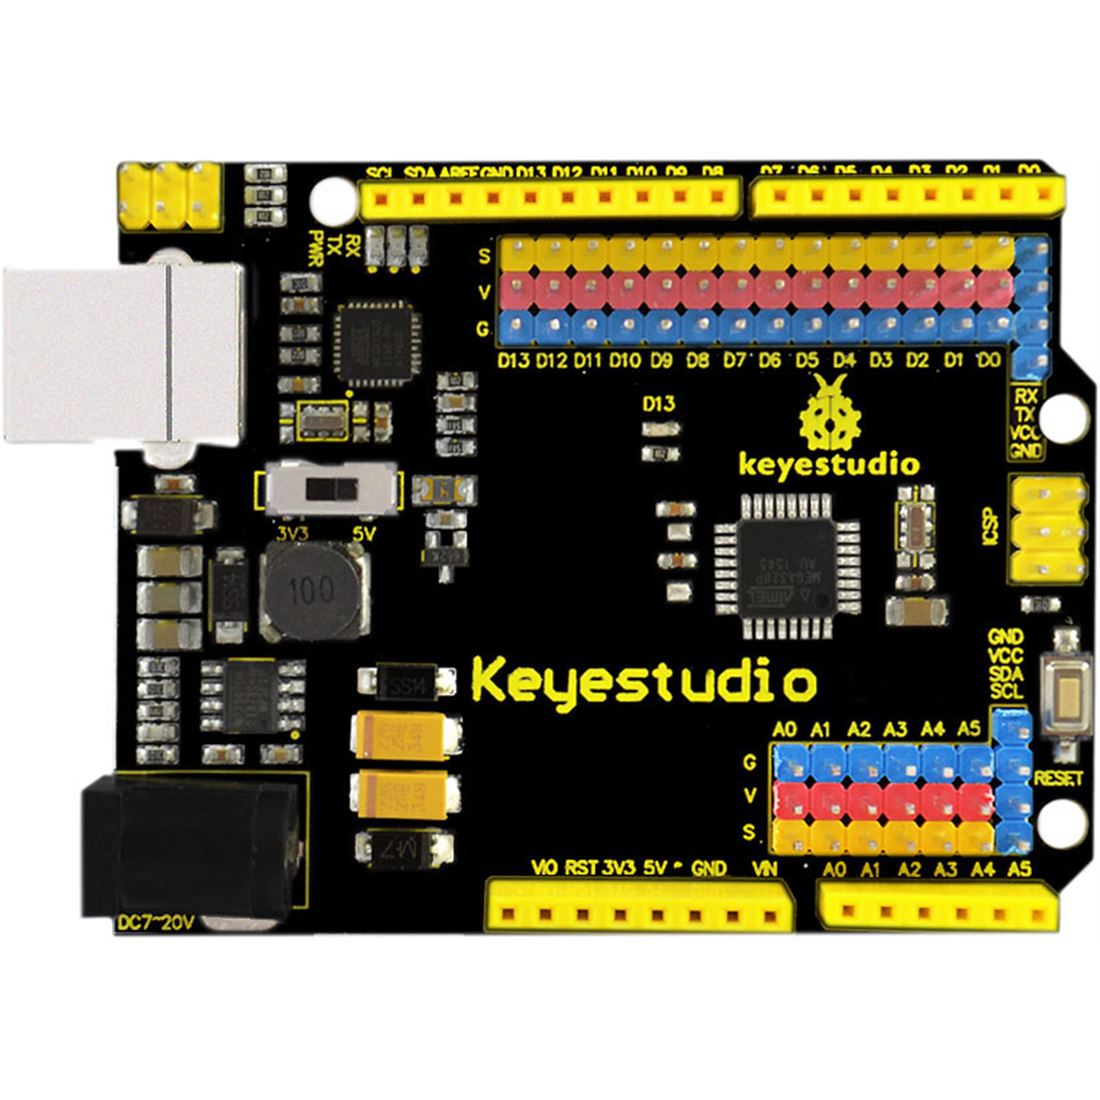 Imagen de una placa Arduino Keyestudio UNO